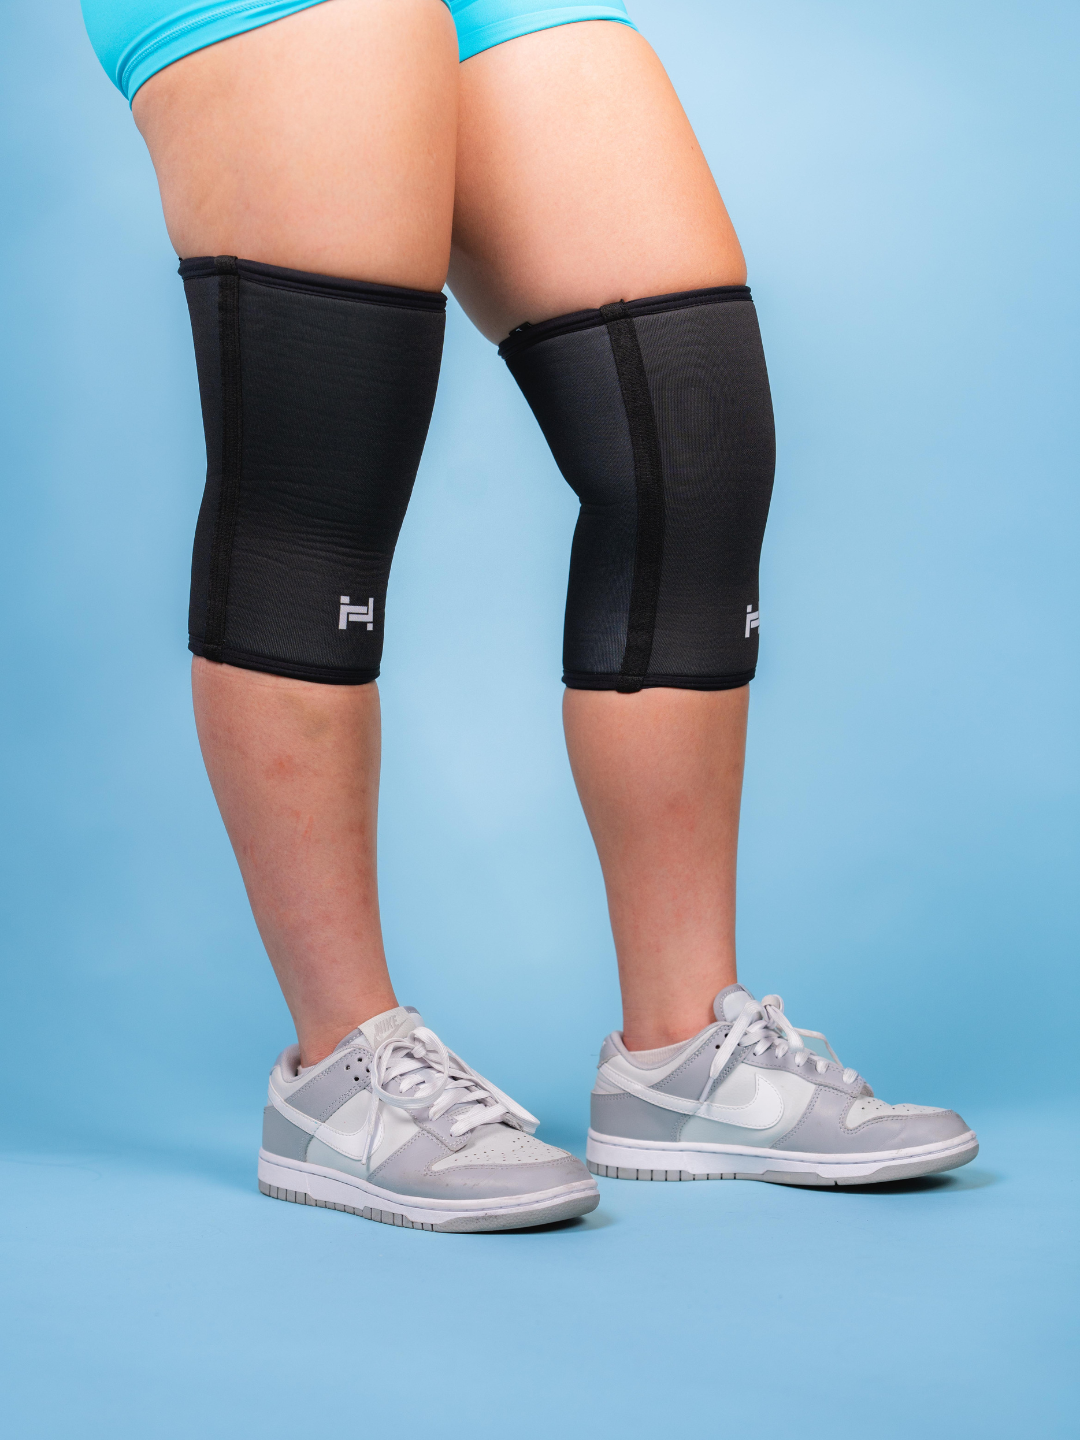 7mm Neoprene Knee Sleeves – Heaviko